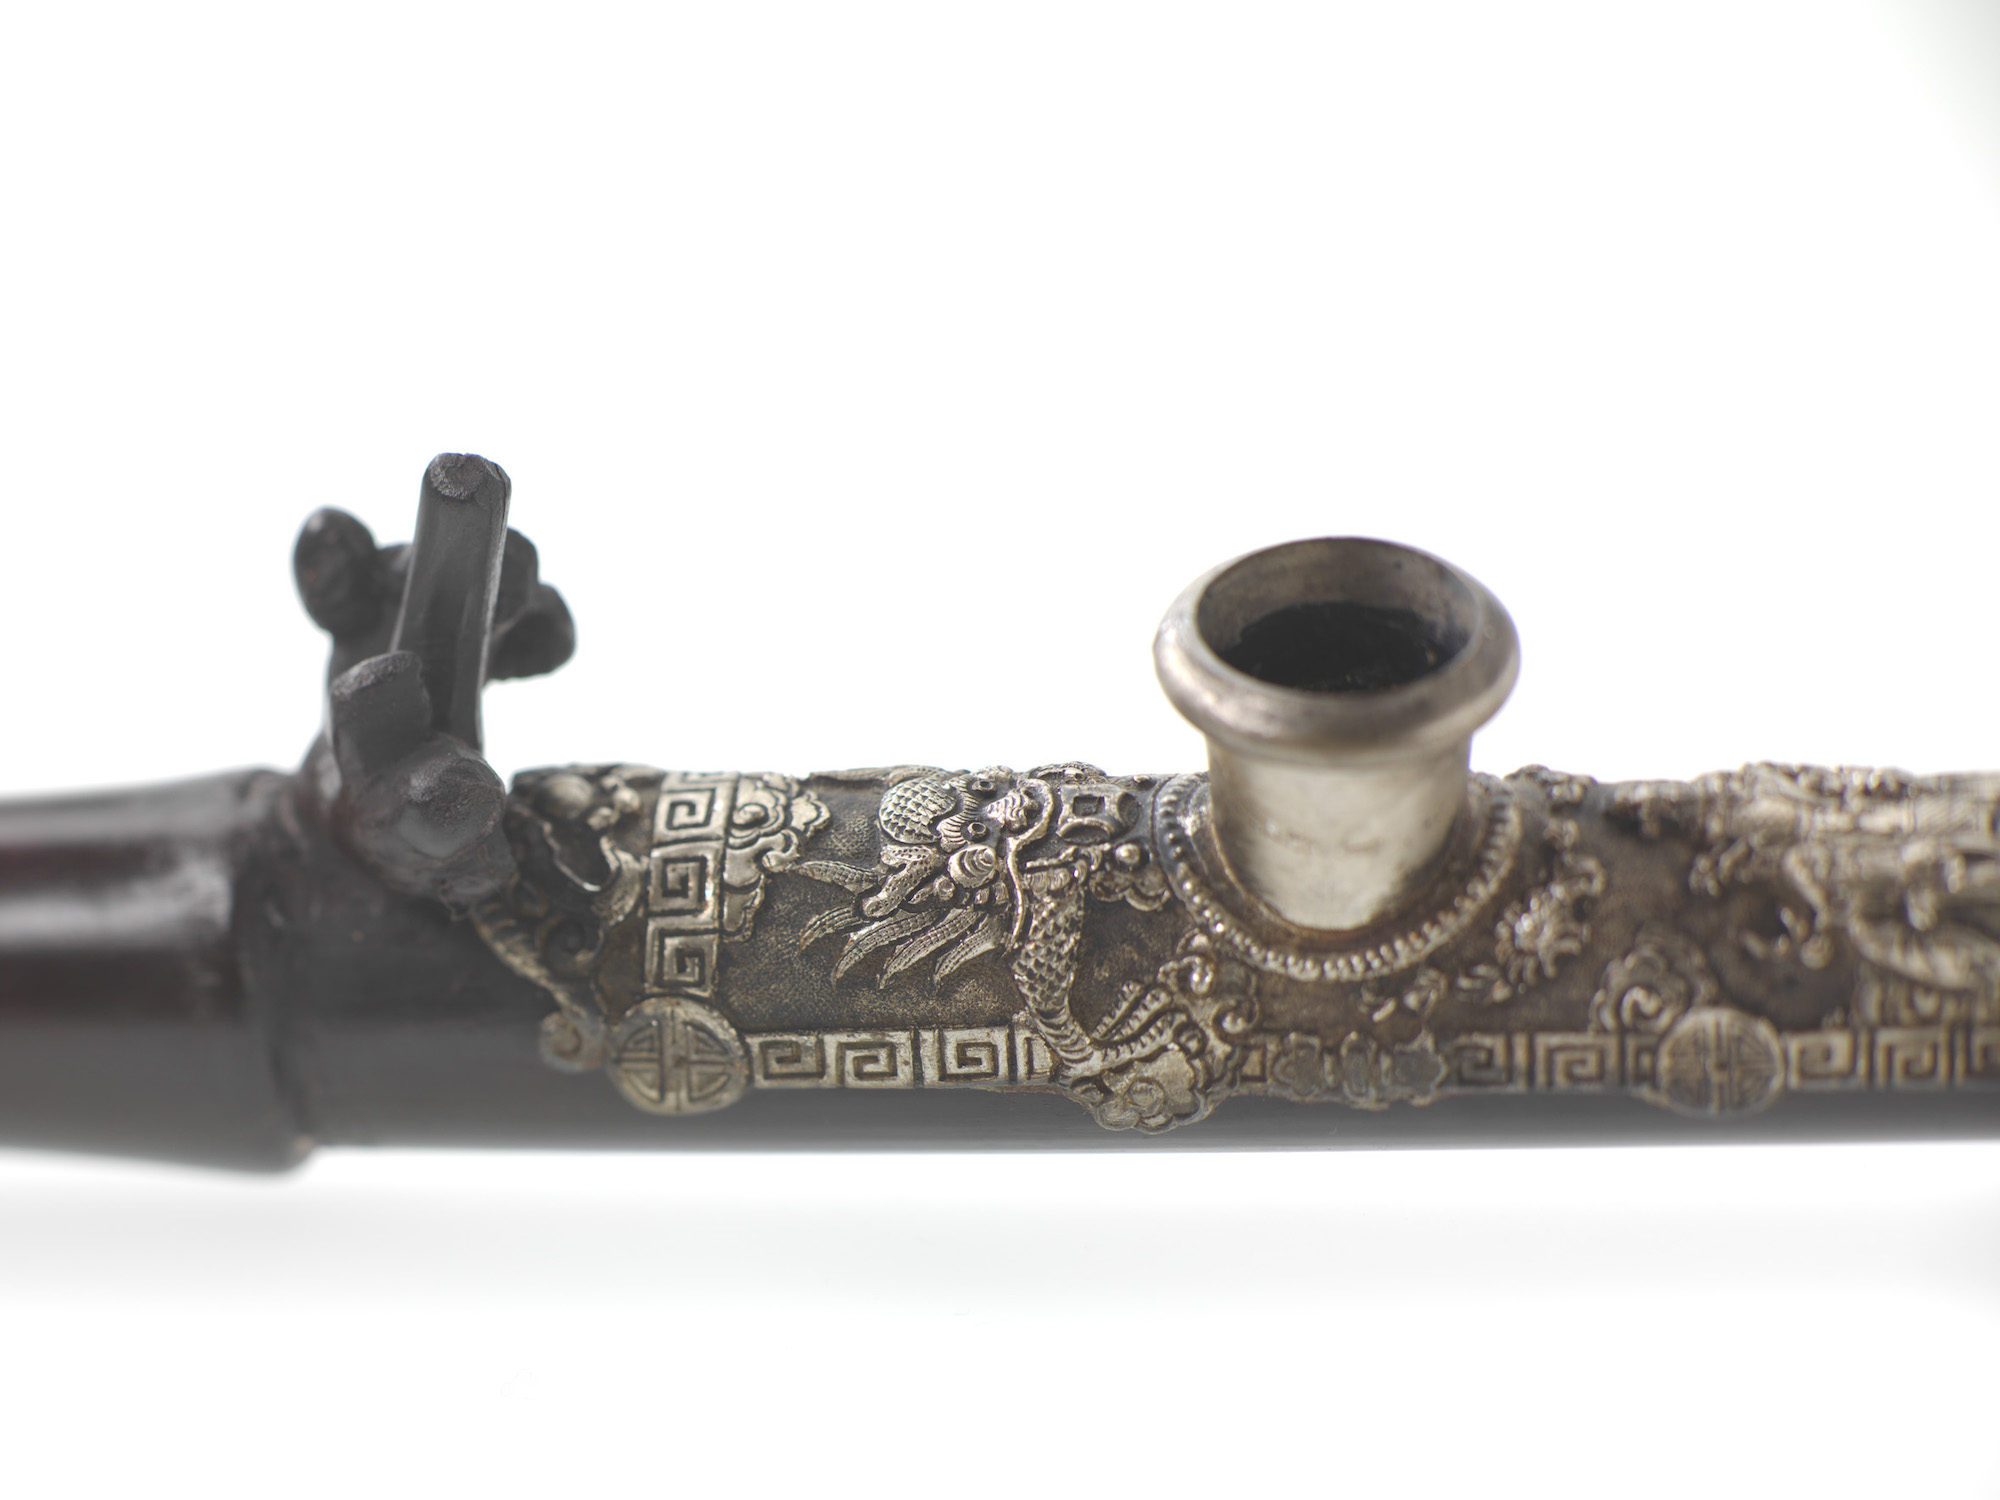 Detail einer kunstvoll verzierten Opiumpfeife